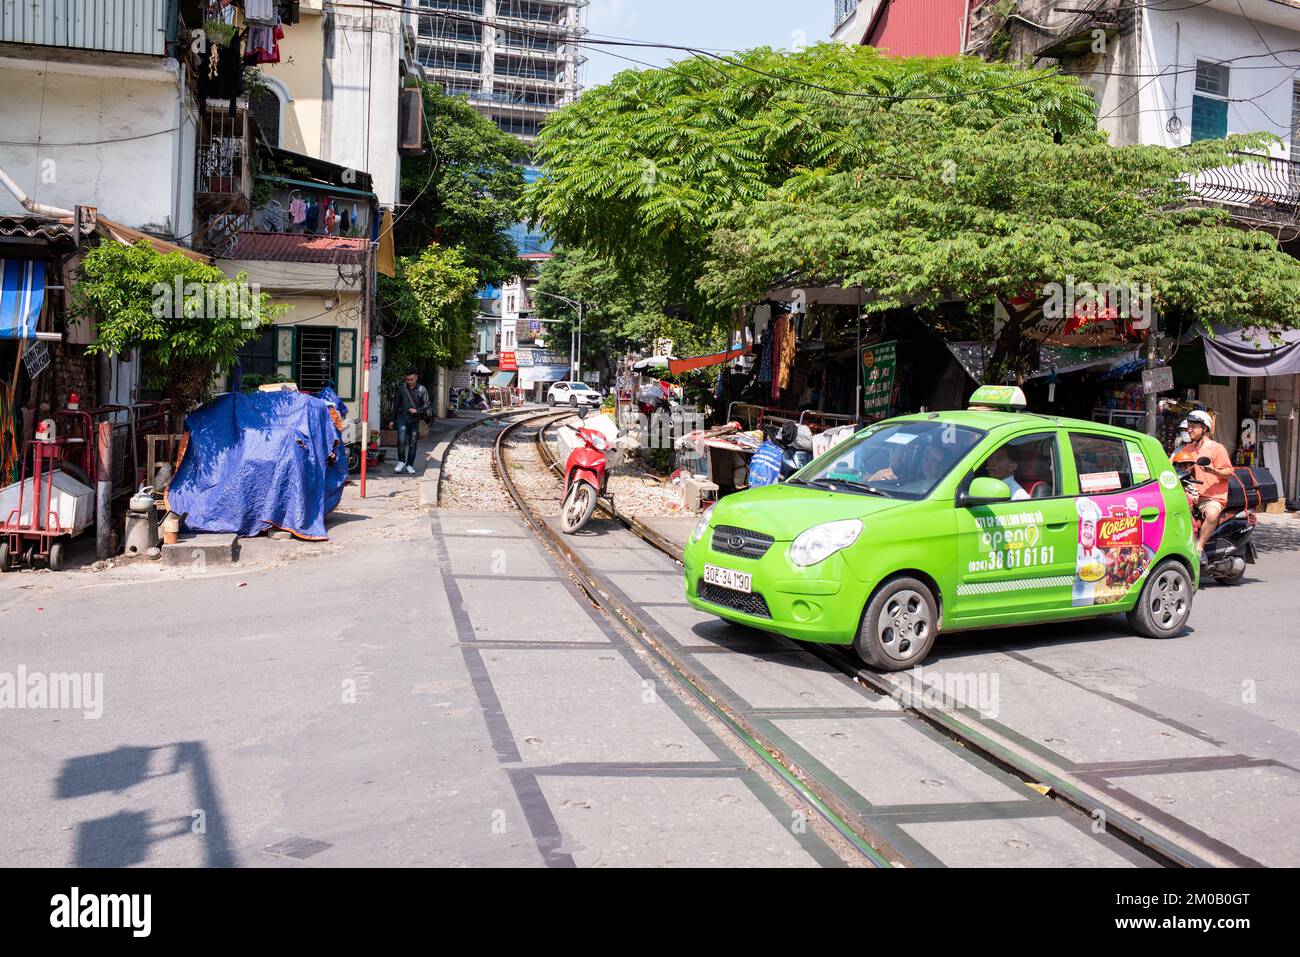 Hanoï, Vietnam - 16 septembre 2018: Taxi avec la publicité traverse la voie de train qui traverse la ville de Hanoï, manque de sécurité routière Banque D'Images